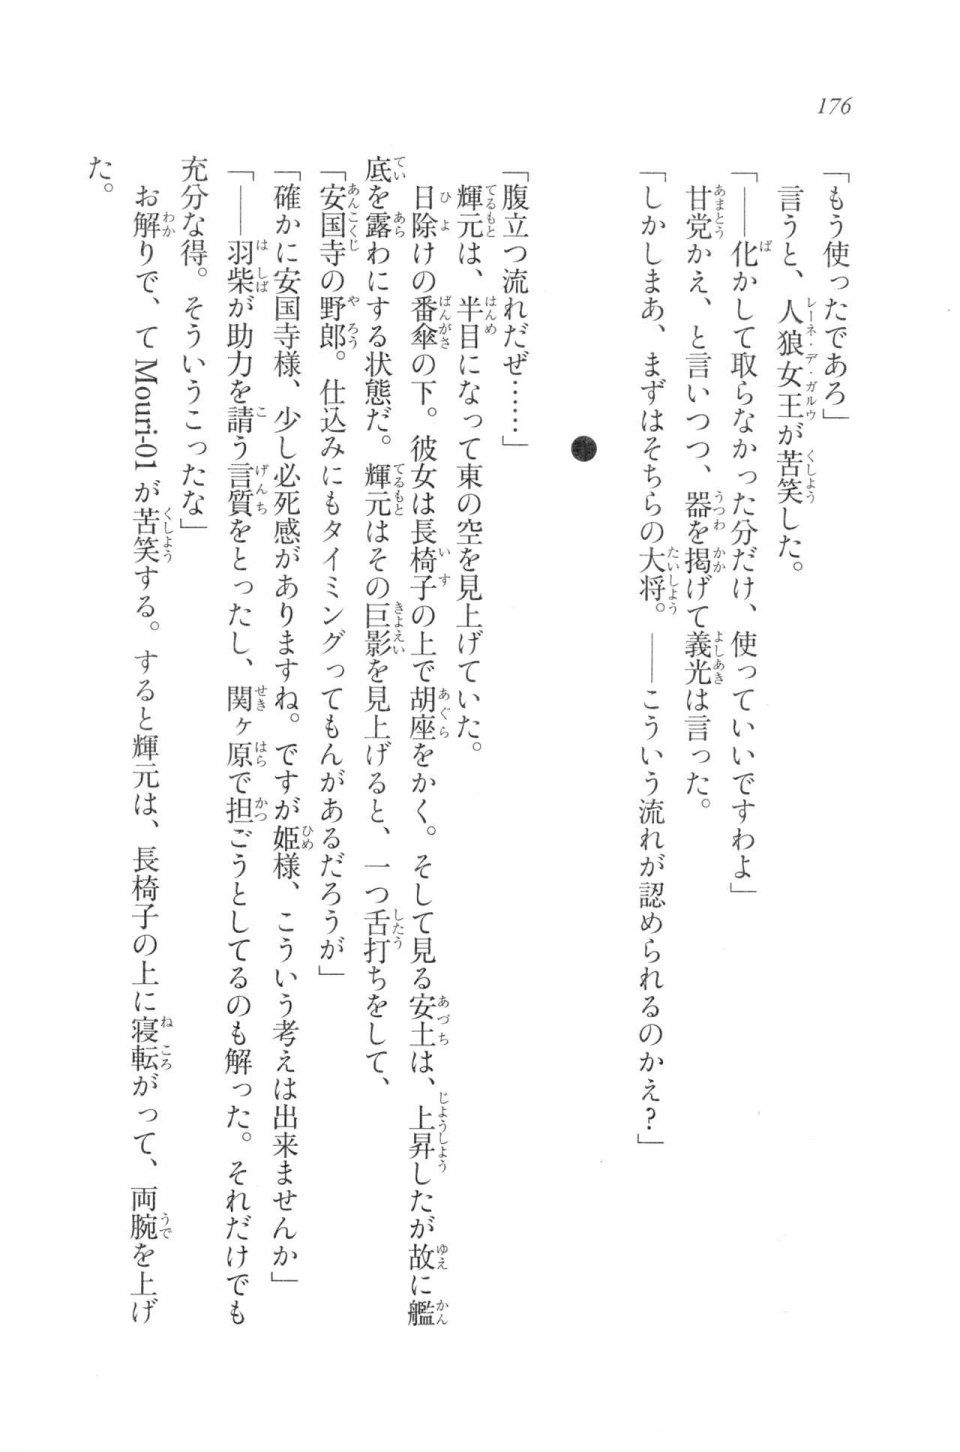 Kyoukai Senjou no Horizon LN Vol 20(8B) - Photo #176